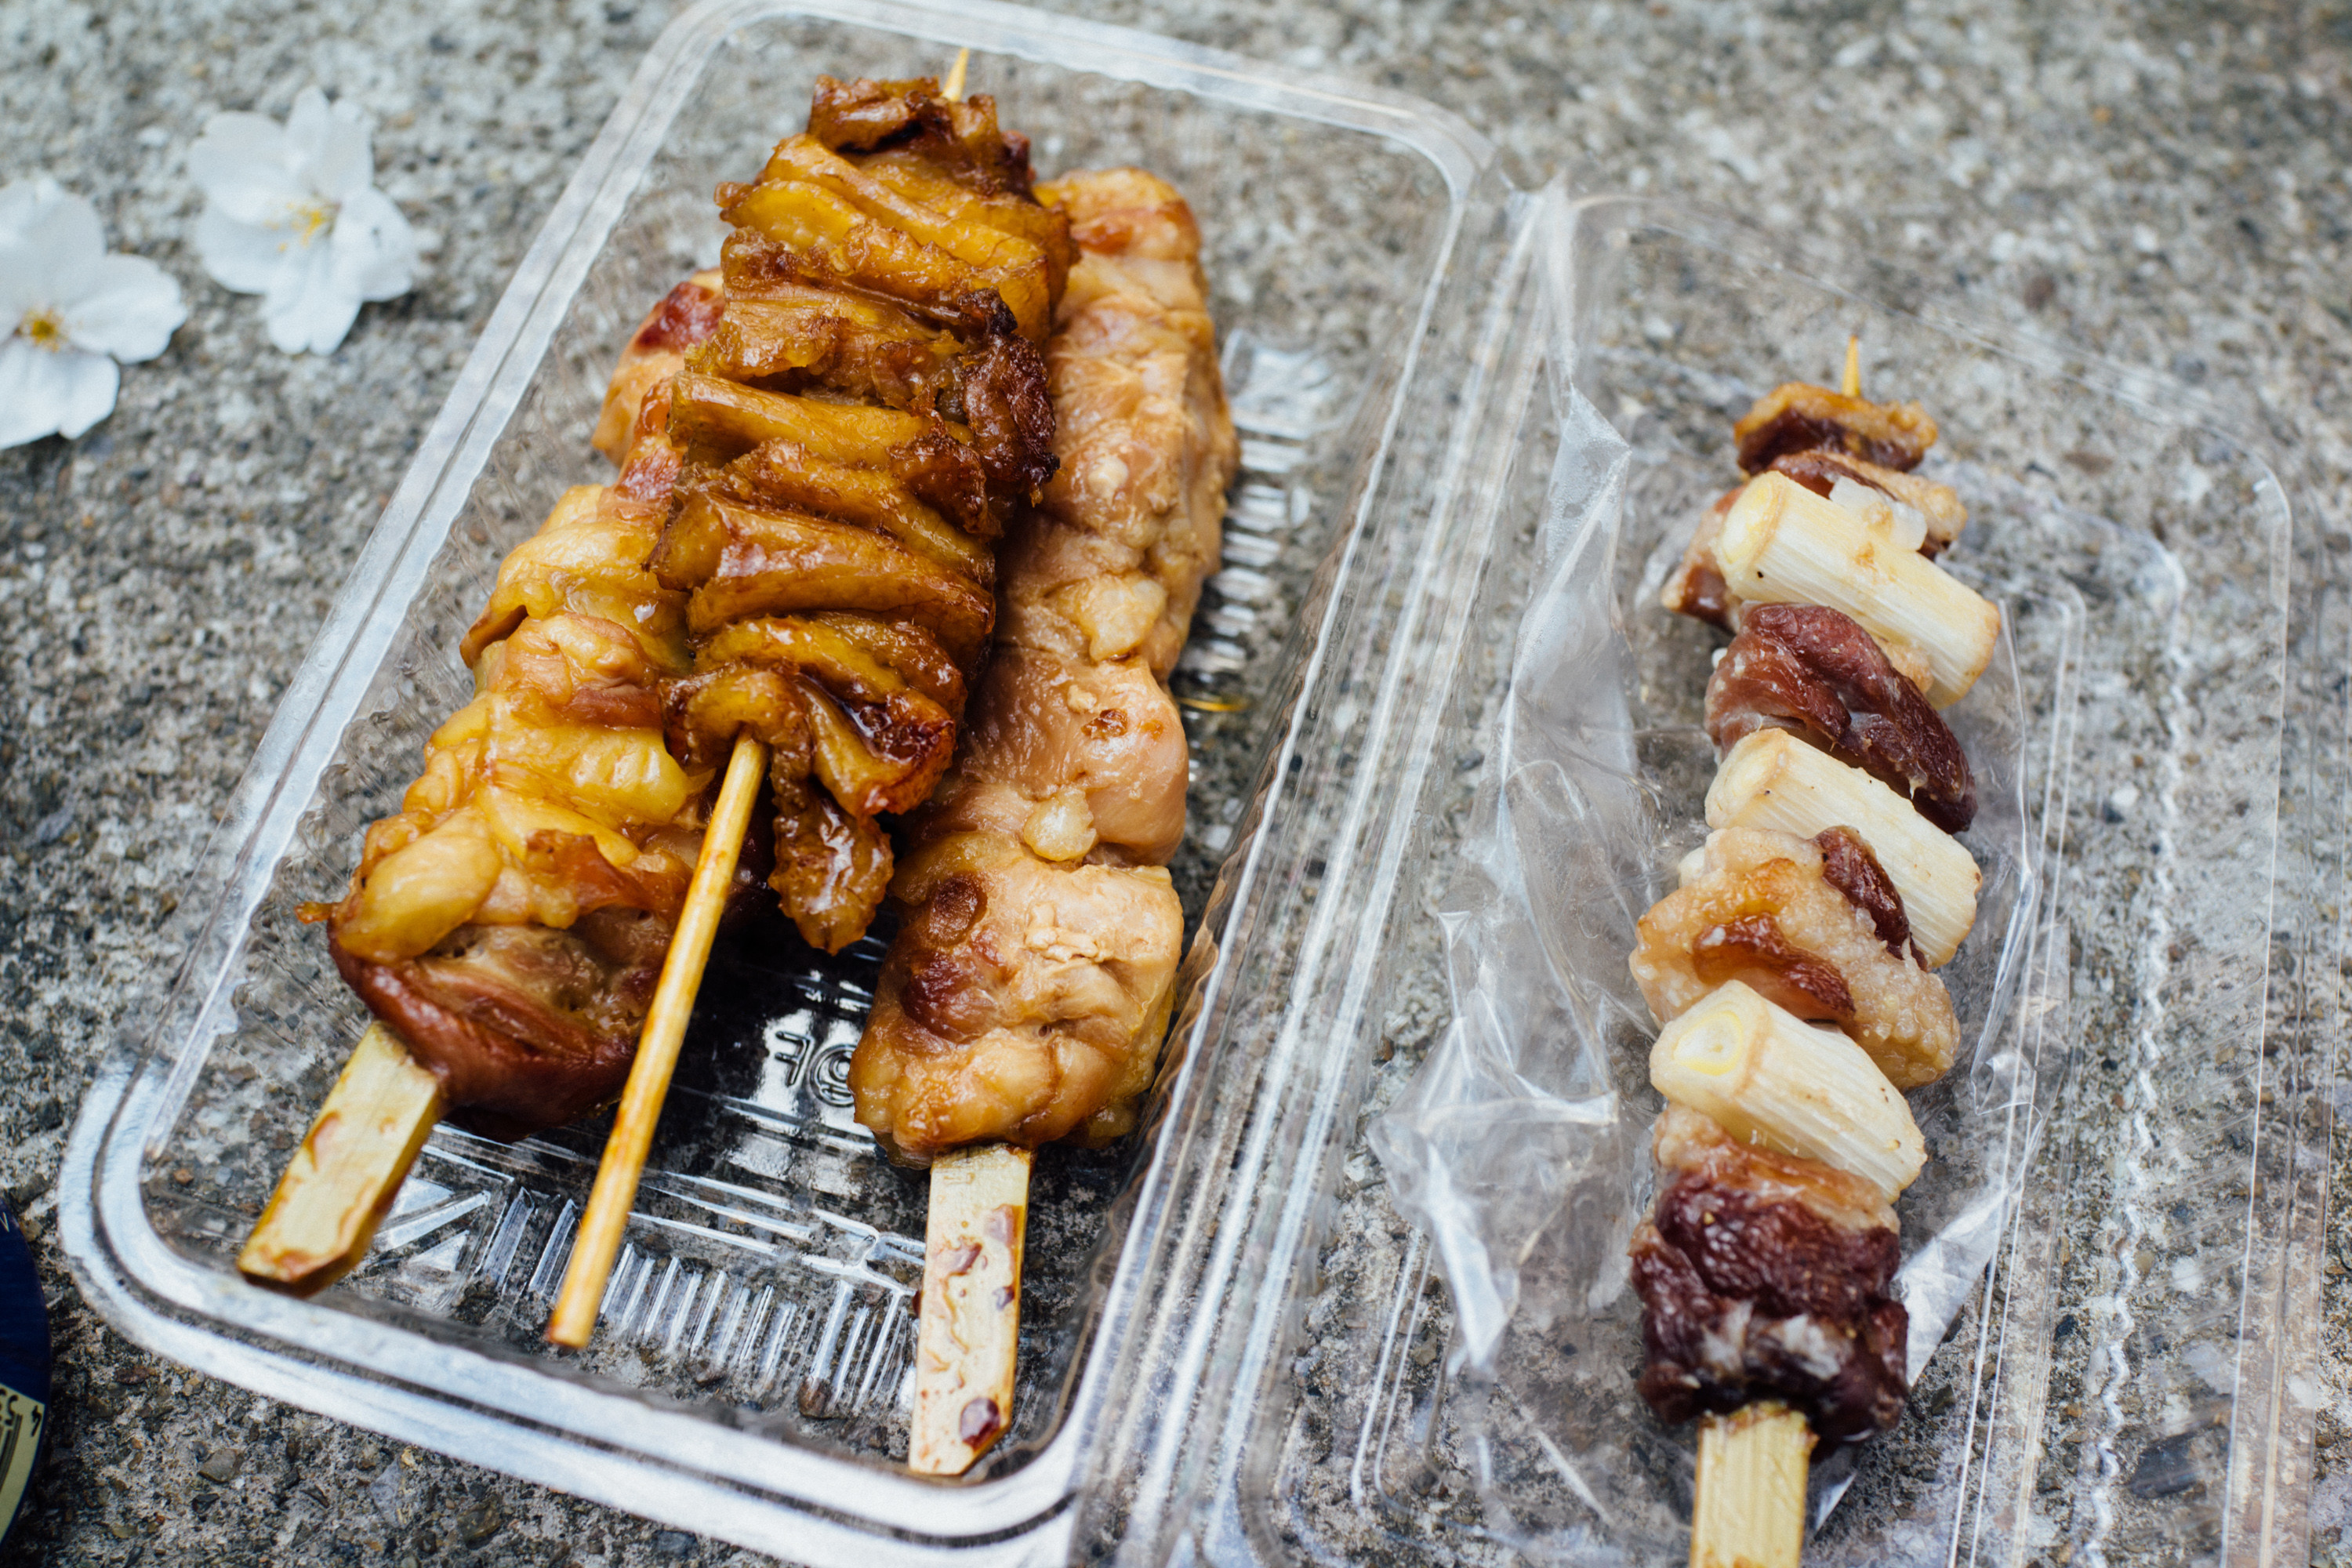 地元に愛される肉屋さん「竹松鶏肉店」で焼き鳥をテイクアウトする